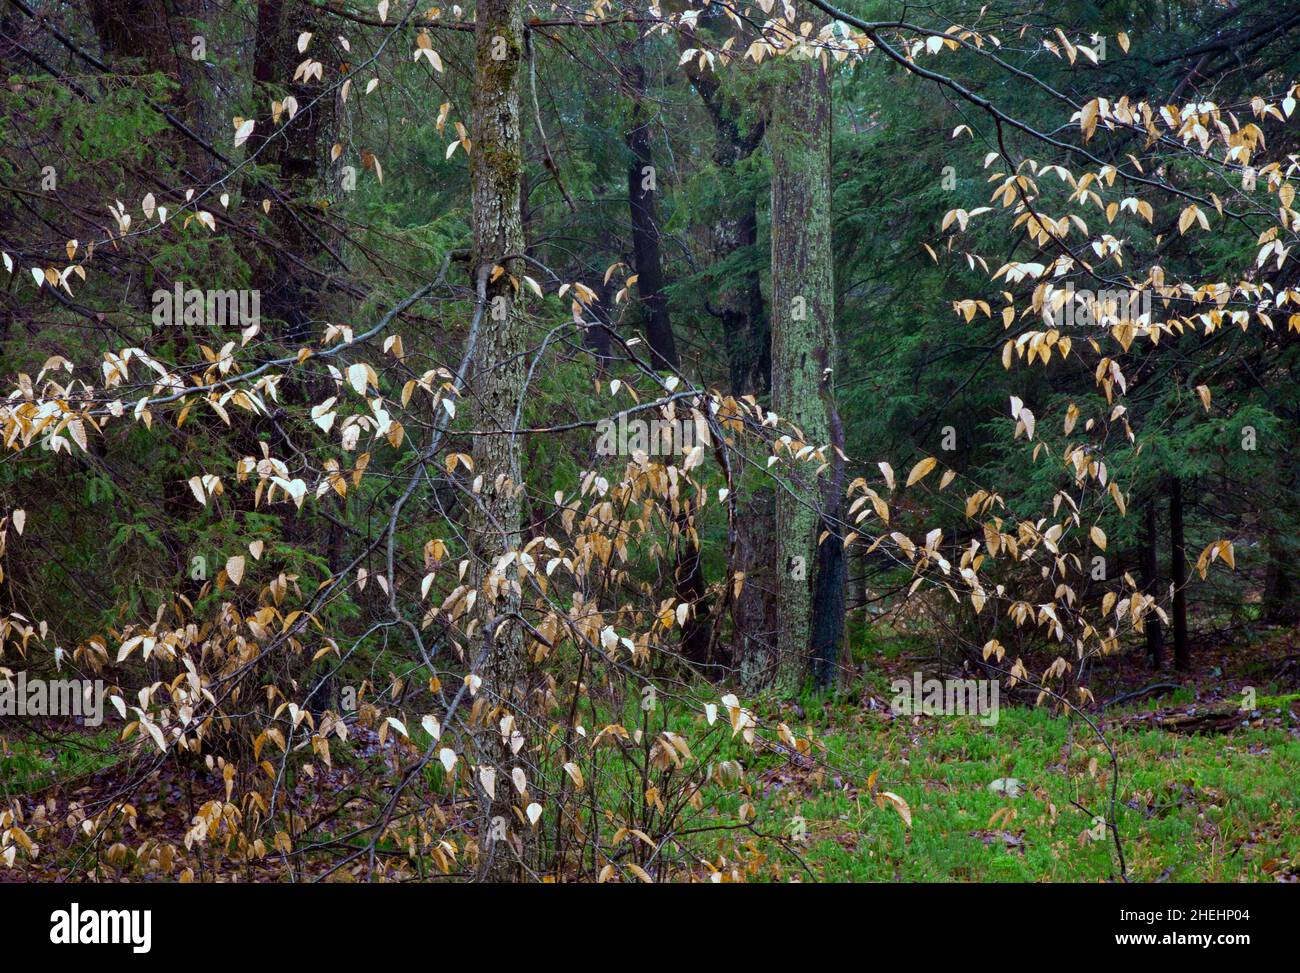 Foresta di latifoglie del nord nelle montagne di Pocono della Pennsylvania, che contiene il faggio americano, l'acero rosso e l'emlock orientale Foto Stock